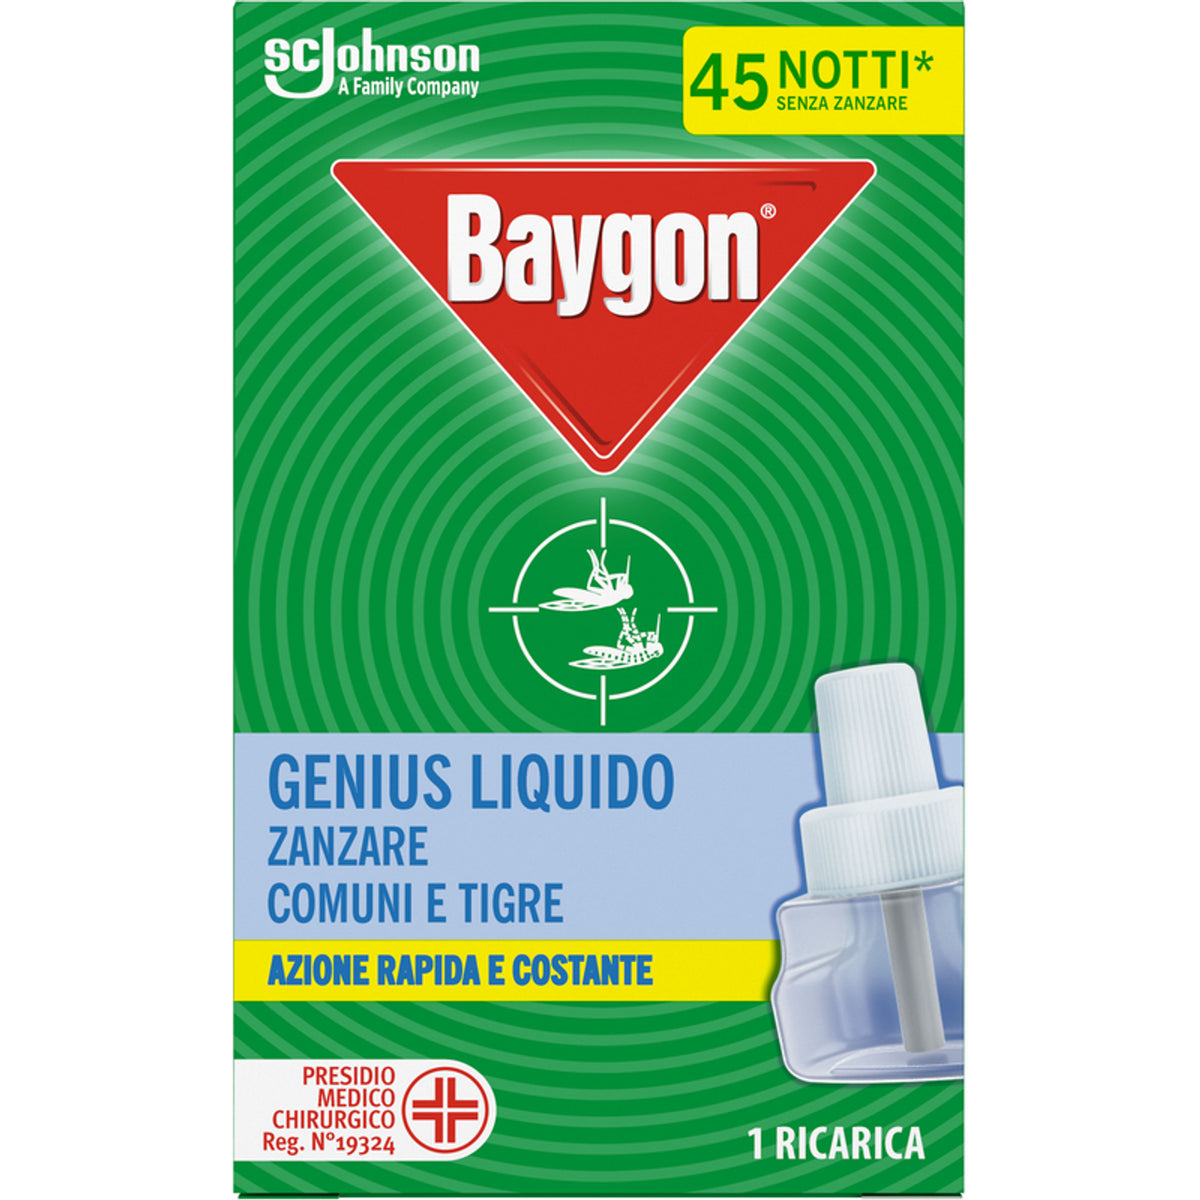 Baygon Genius Insectide Mosquito Płyn ładuje 45 noce